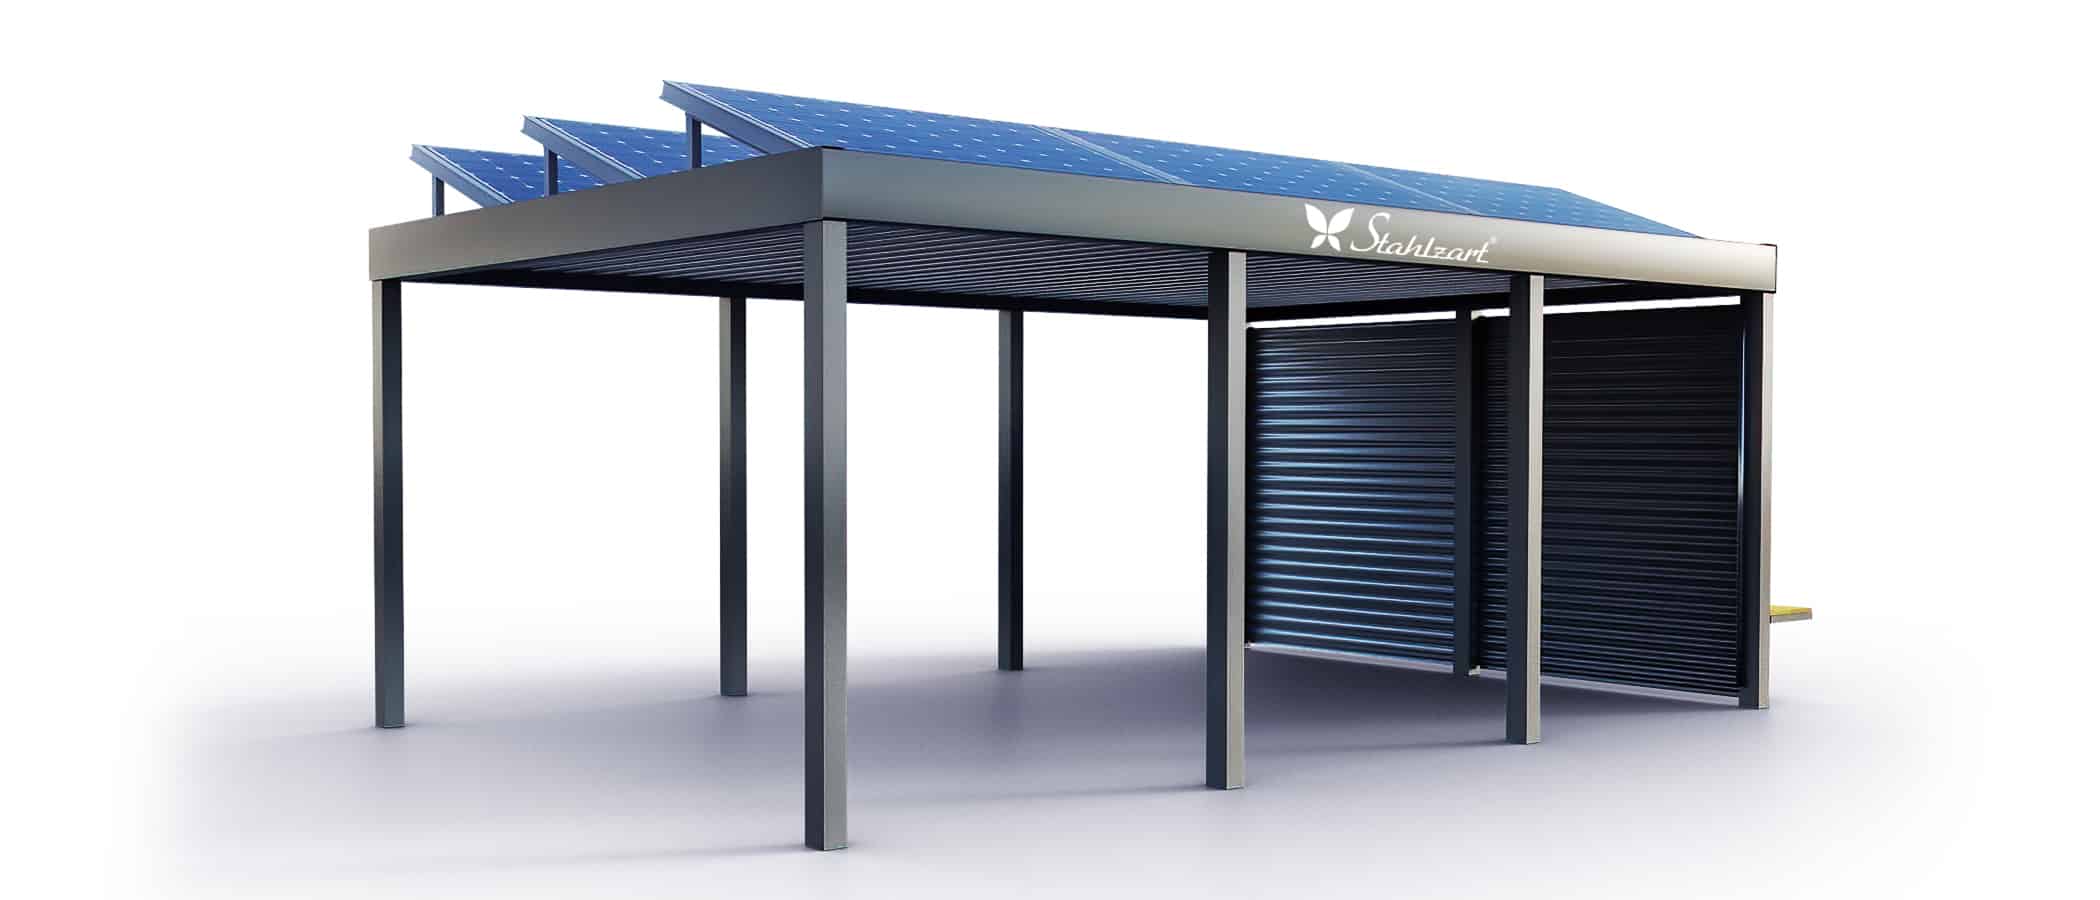 solar-carport-mit-flachdach-carports-pv-anlage-solaranlage-photovoltaik-garagen-garagendach-solarcarport-installation-solarmodulen-solarcarports-flaechen-dach-e-auto-loesungen-metall-stahlzart